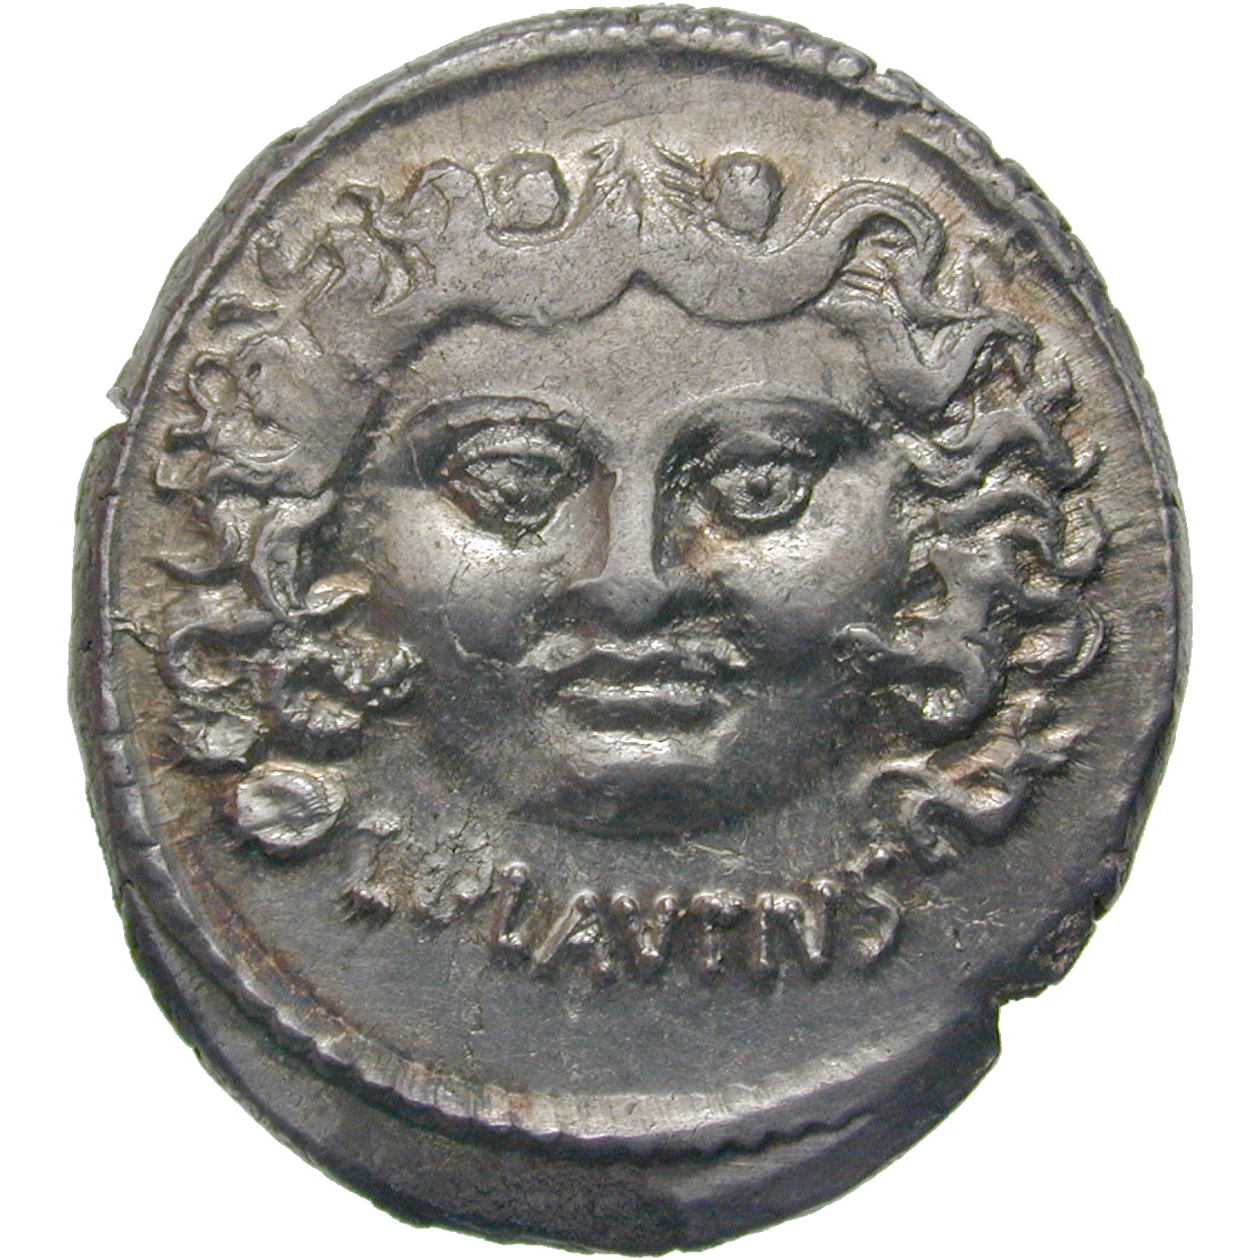 Römische Republik, Denar (obverse)